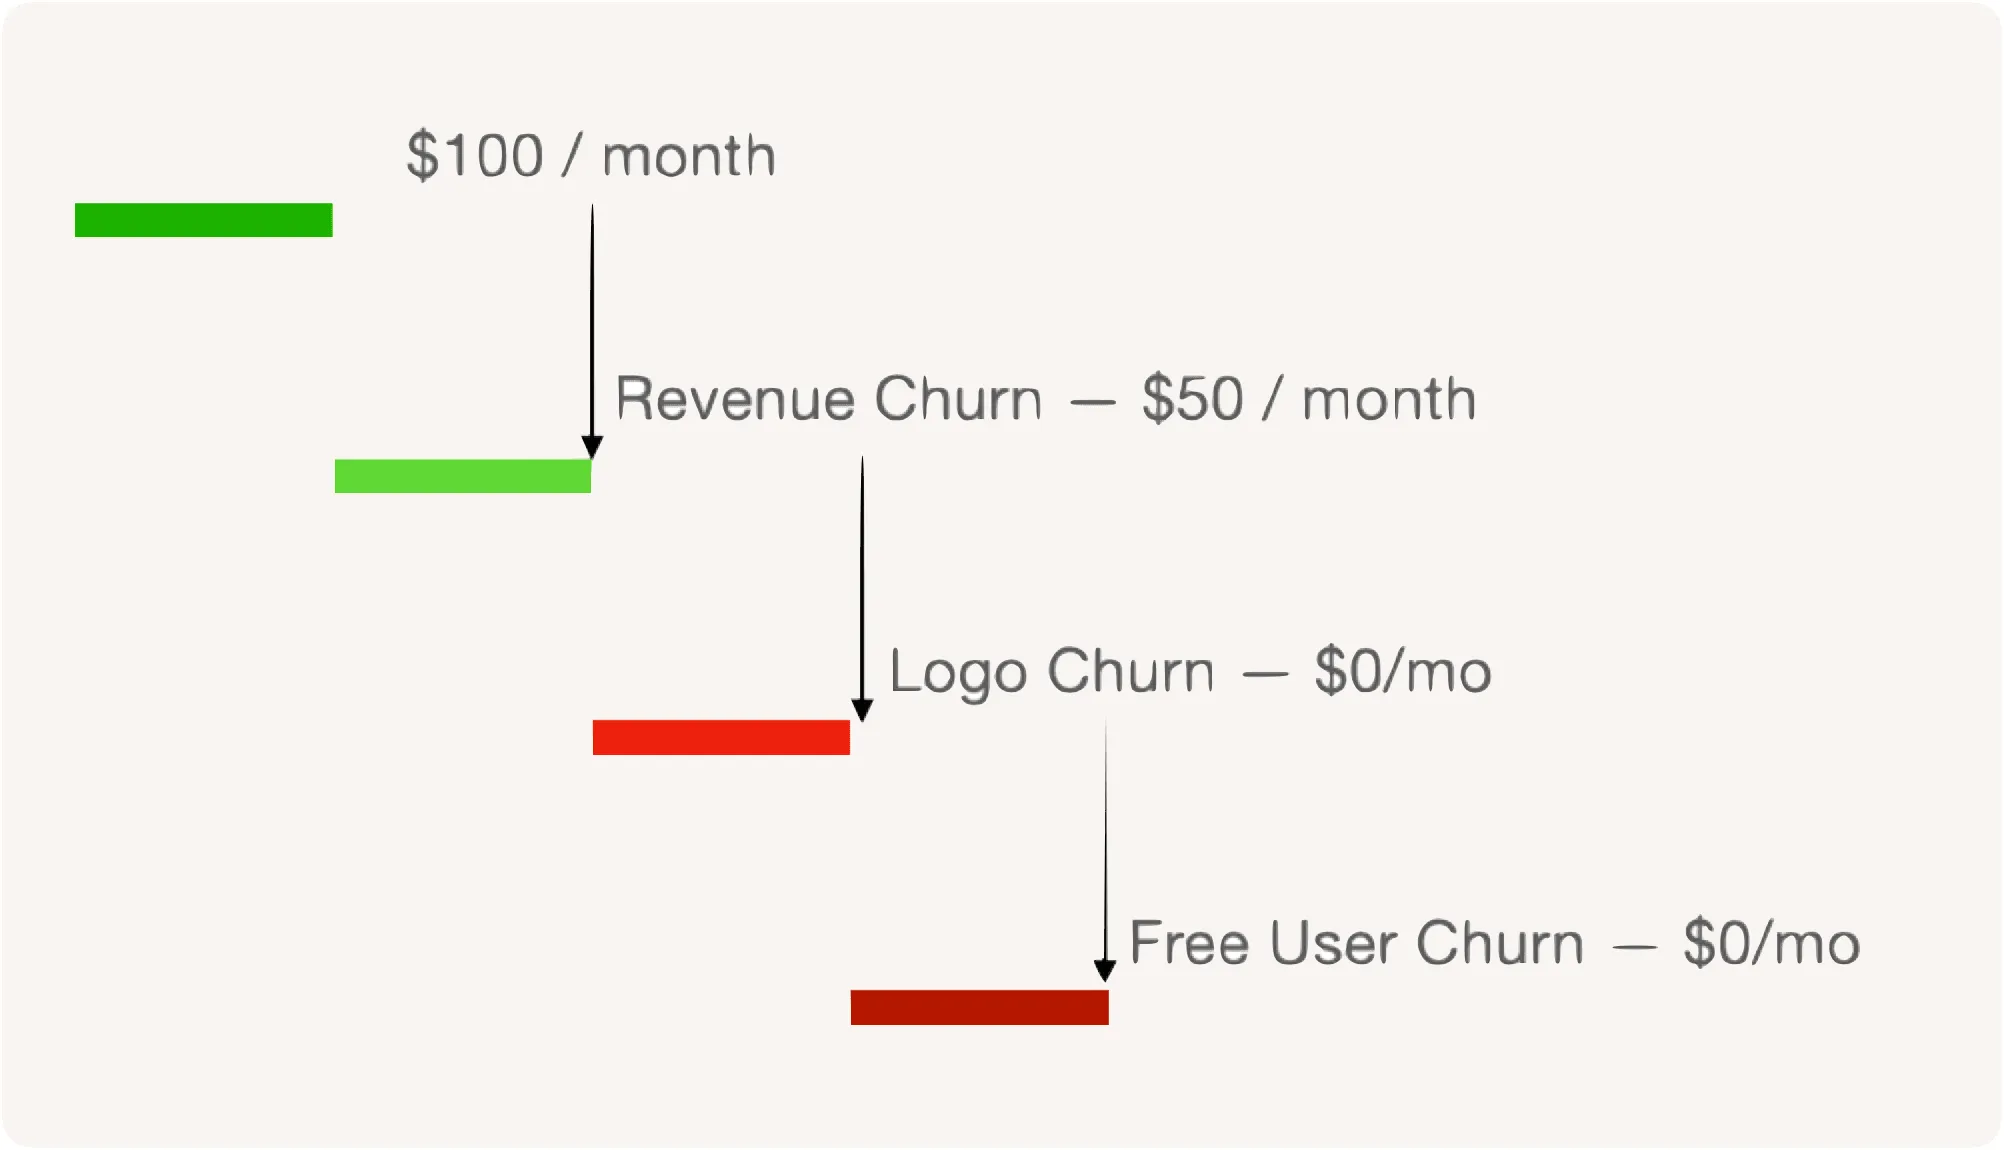 Revenue Churn, Logo churn, and Free user churn